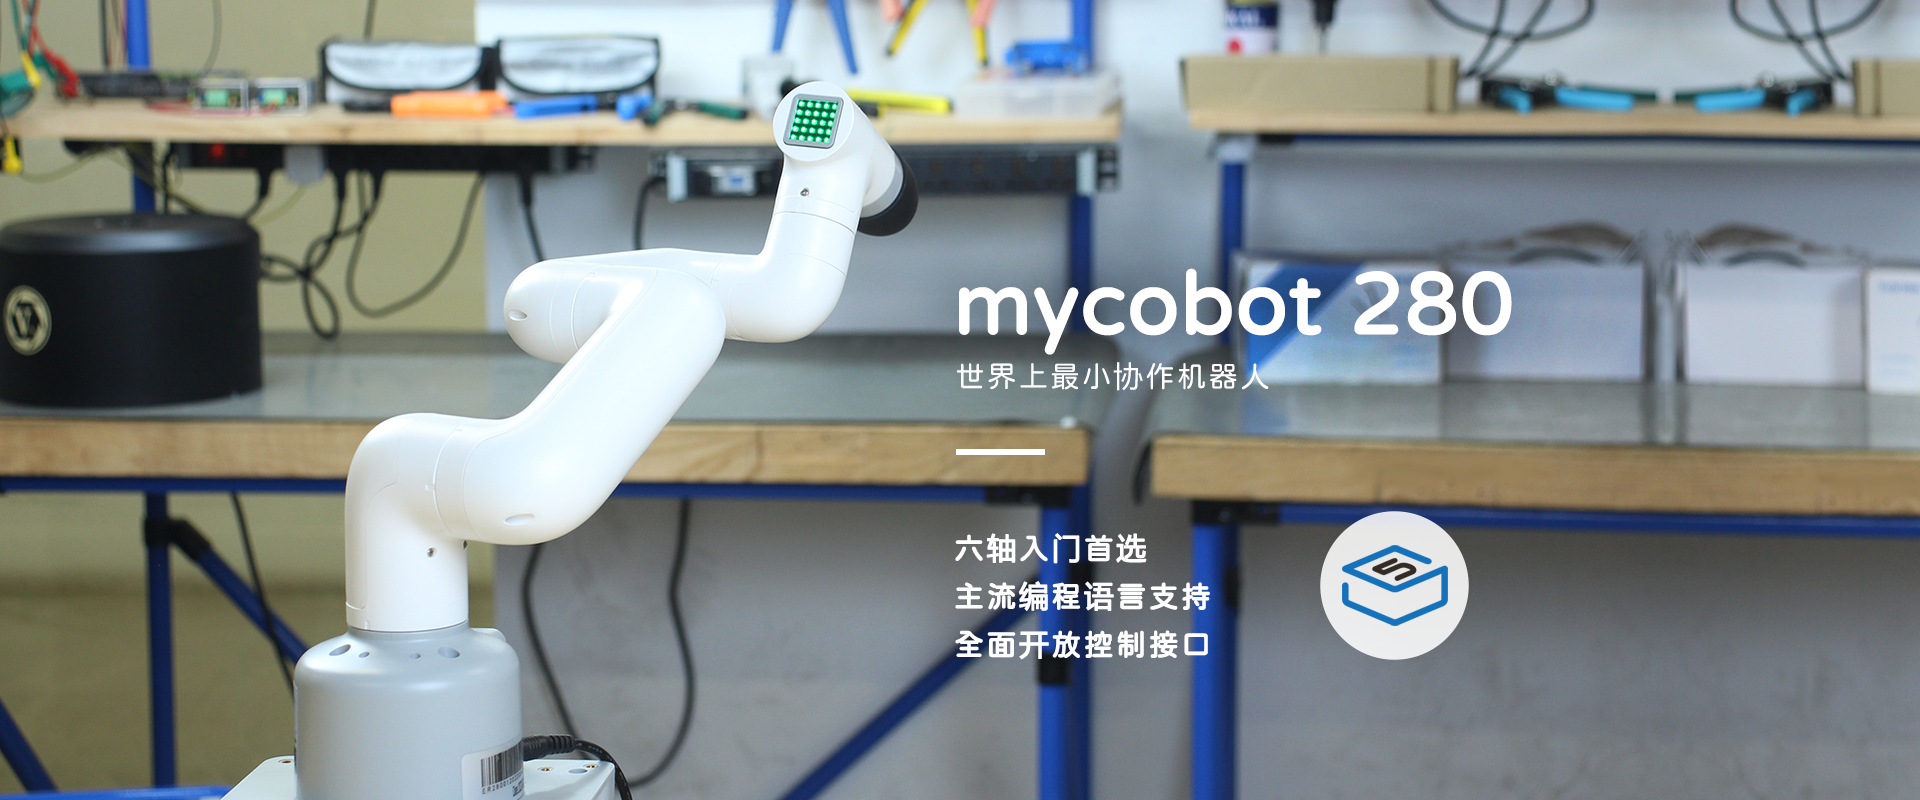 mycobot 280 cn new 1